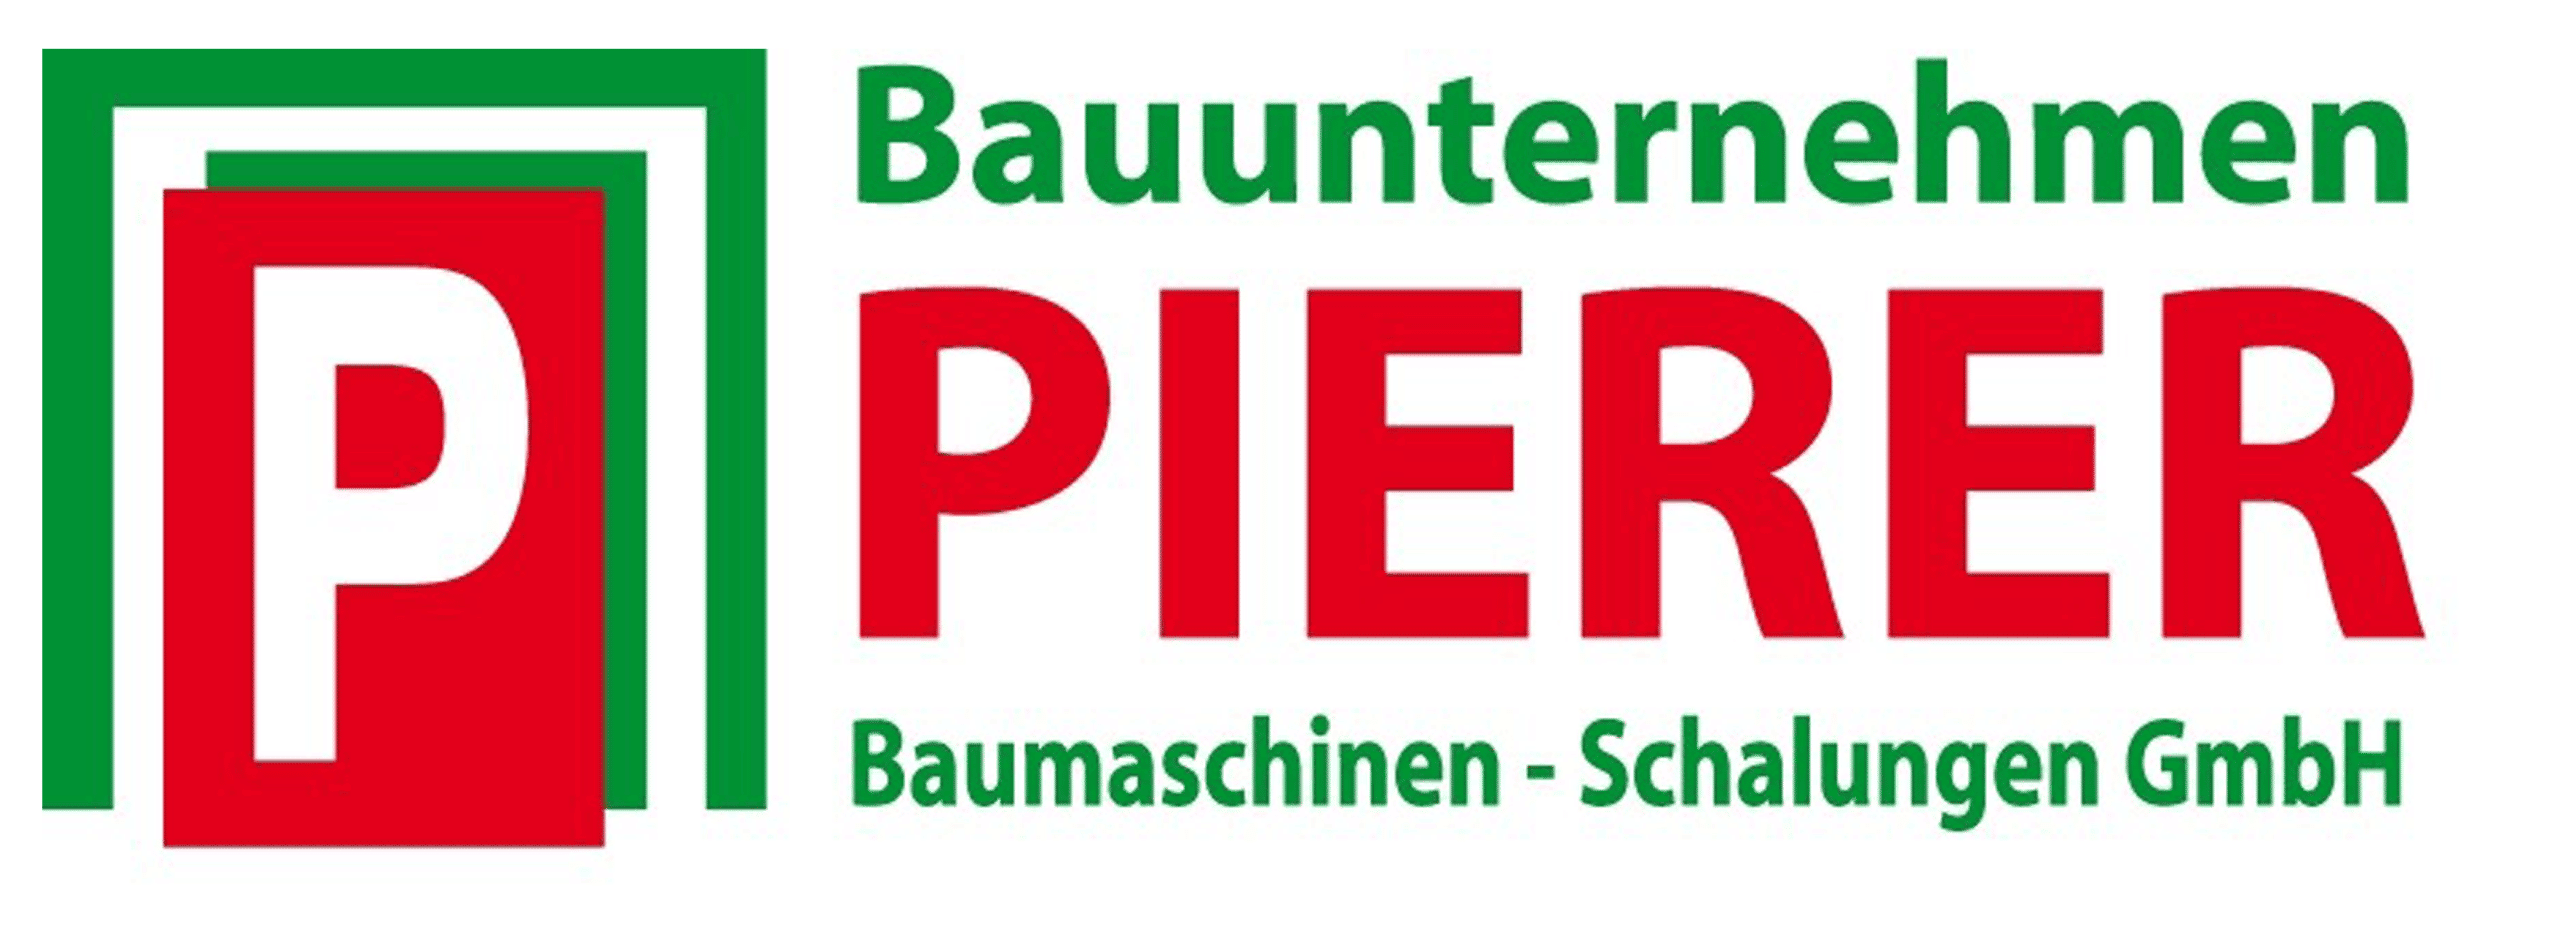 Bauunternehmen Pierer Logo - Sponsor Rechbergrennen